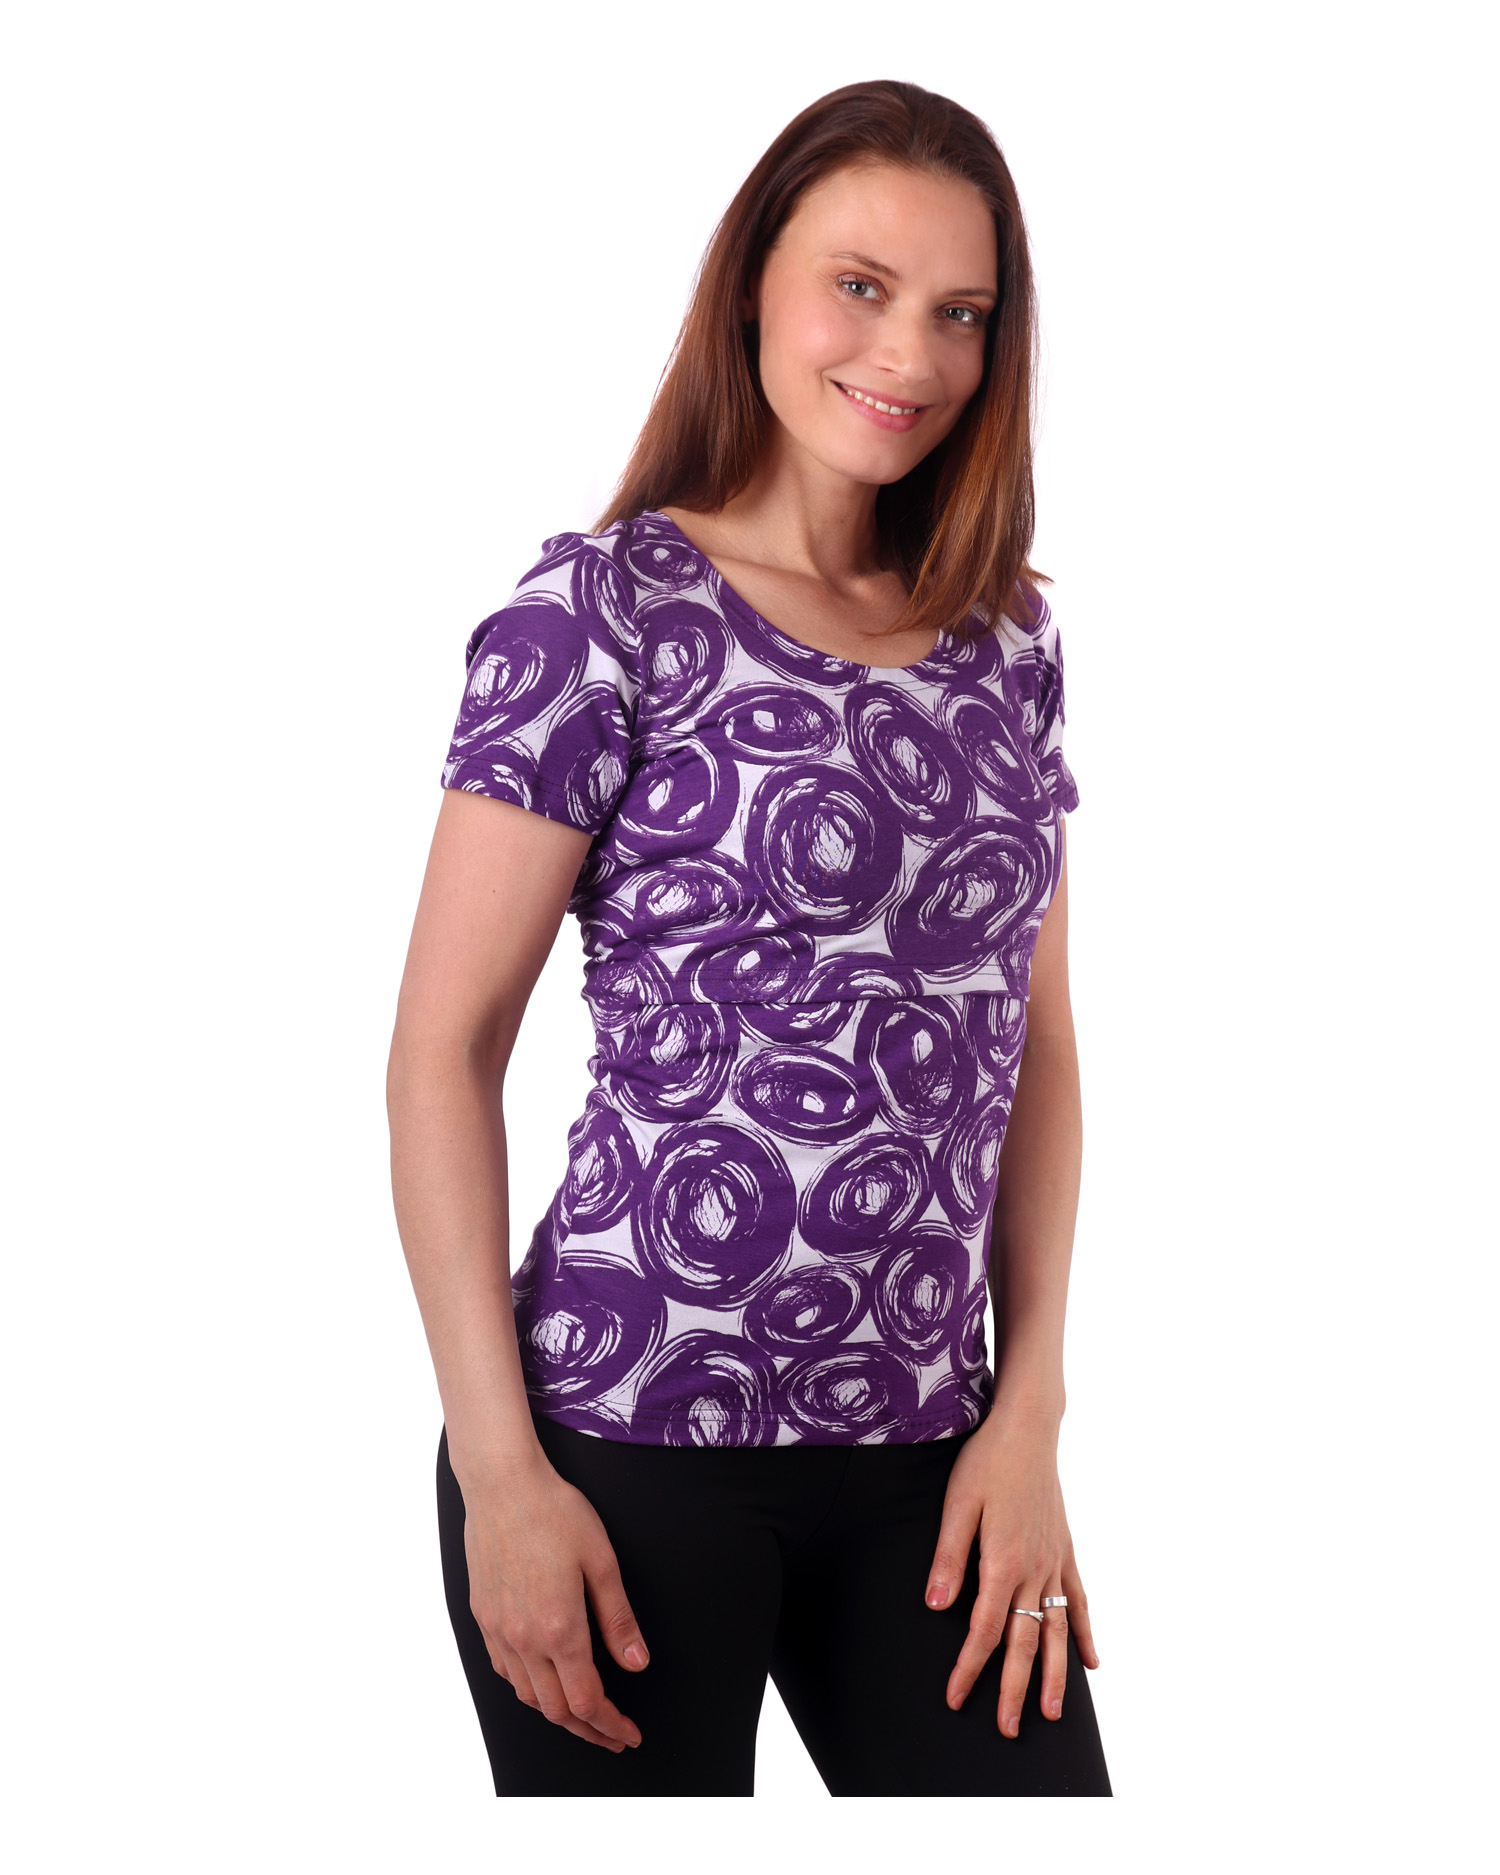 Tričko na dojčenie Katarína, krátky rukáv, fialový vzor